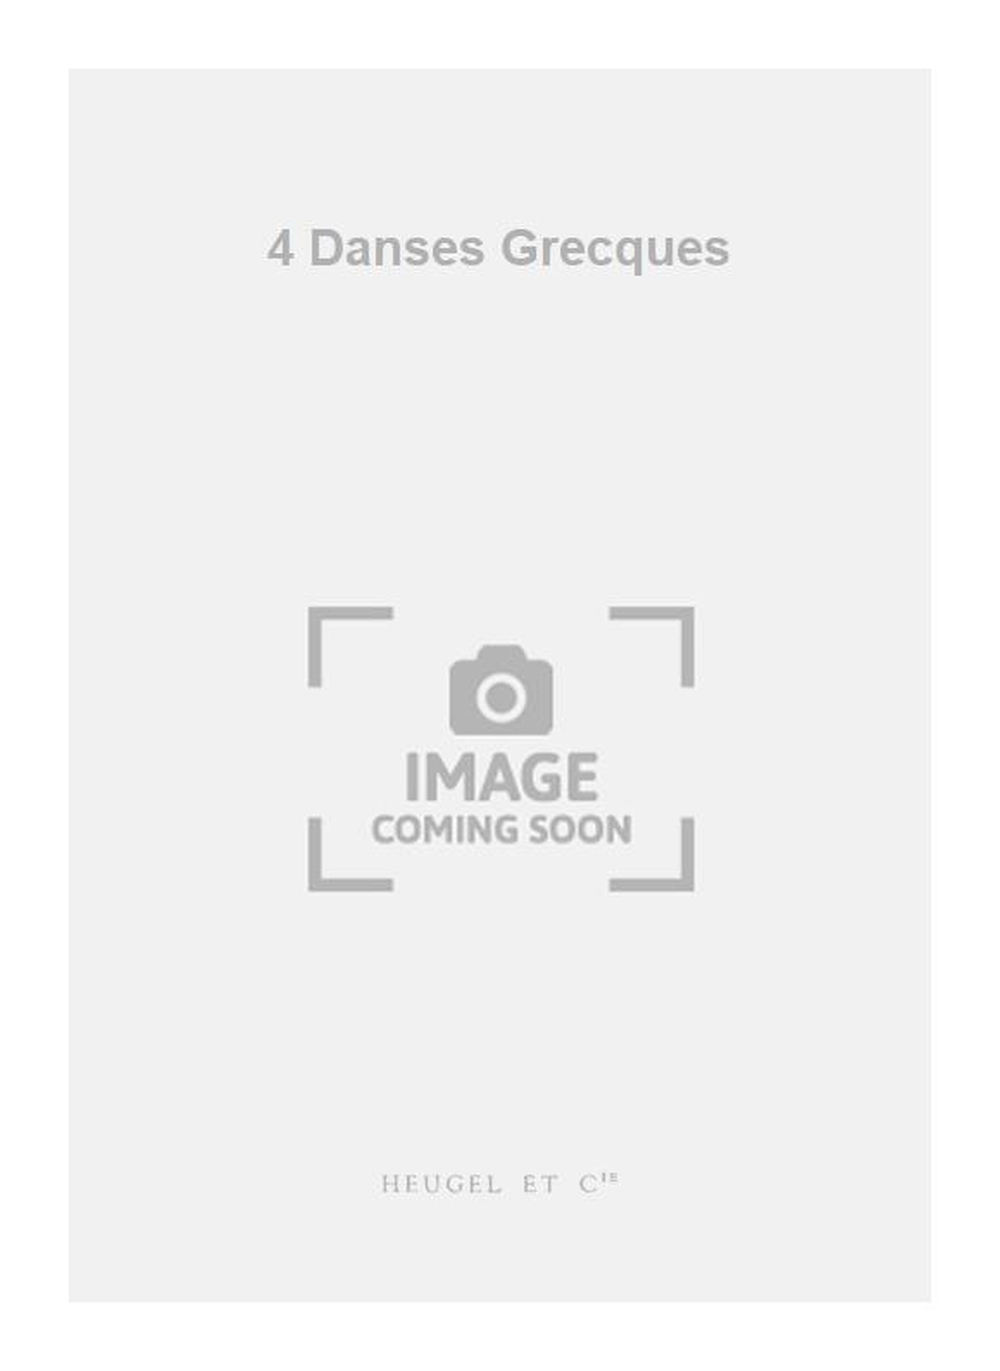 Racol: 4 Danses Grecques